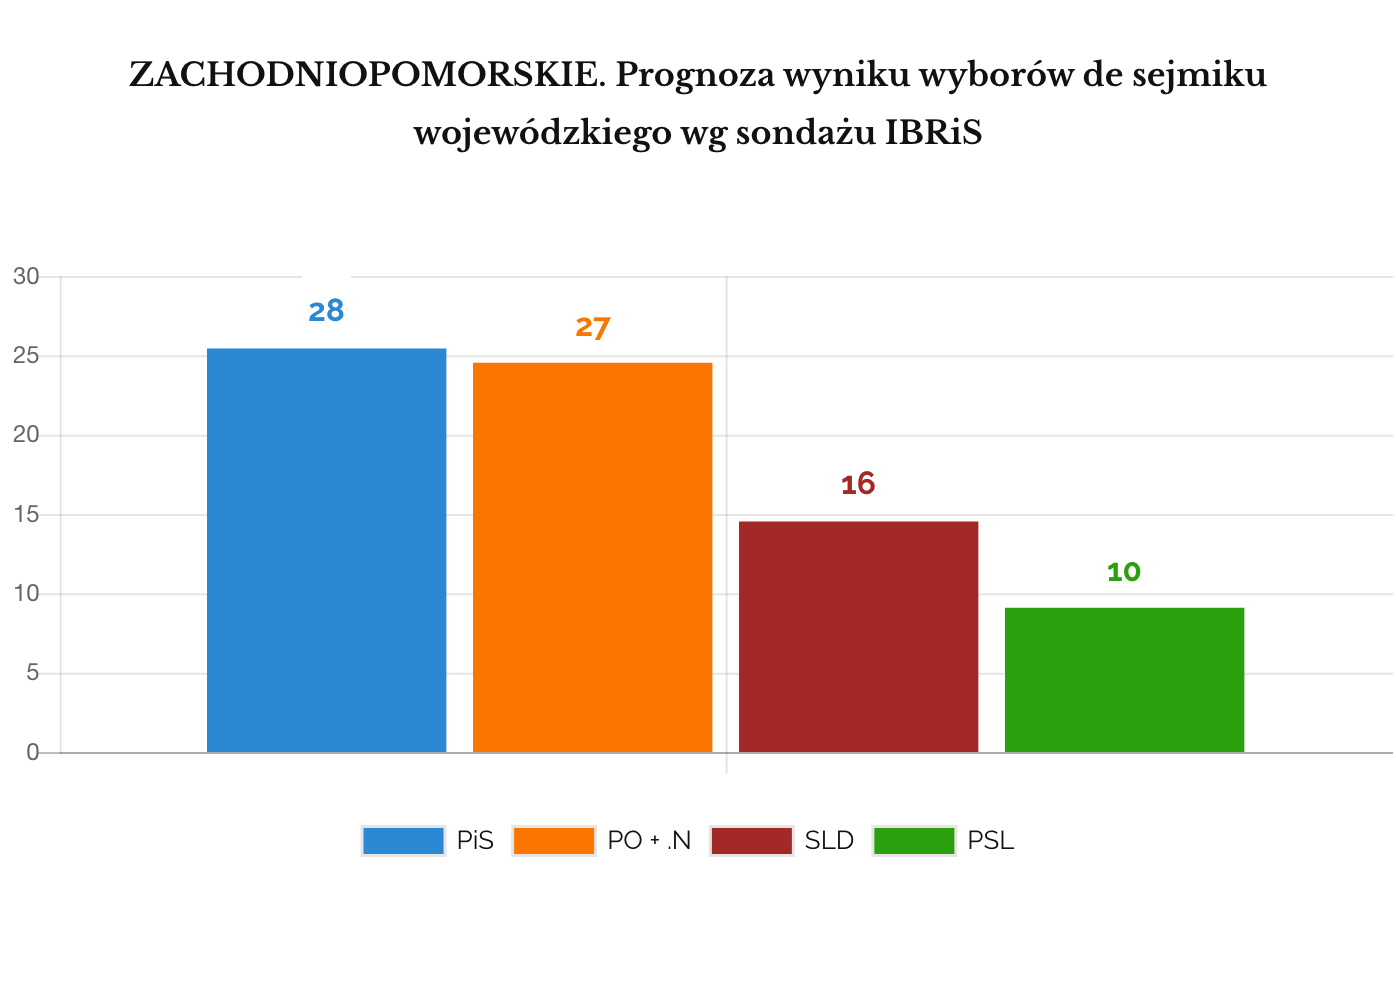 IBRIS Prognoza wyniku wyborów do sejmików wojewódzkich. ZACHODNIOPOMORSKIE